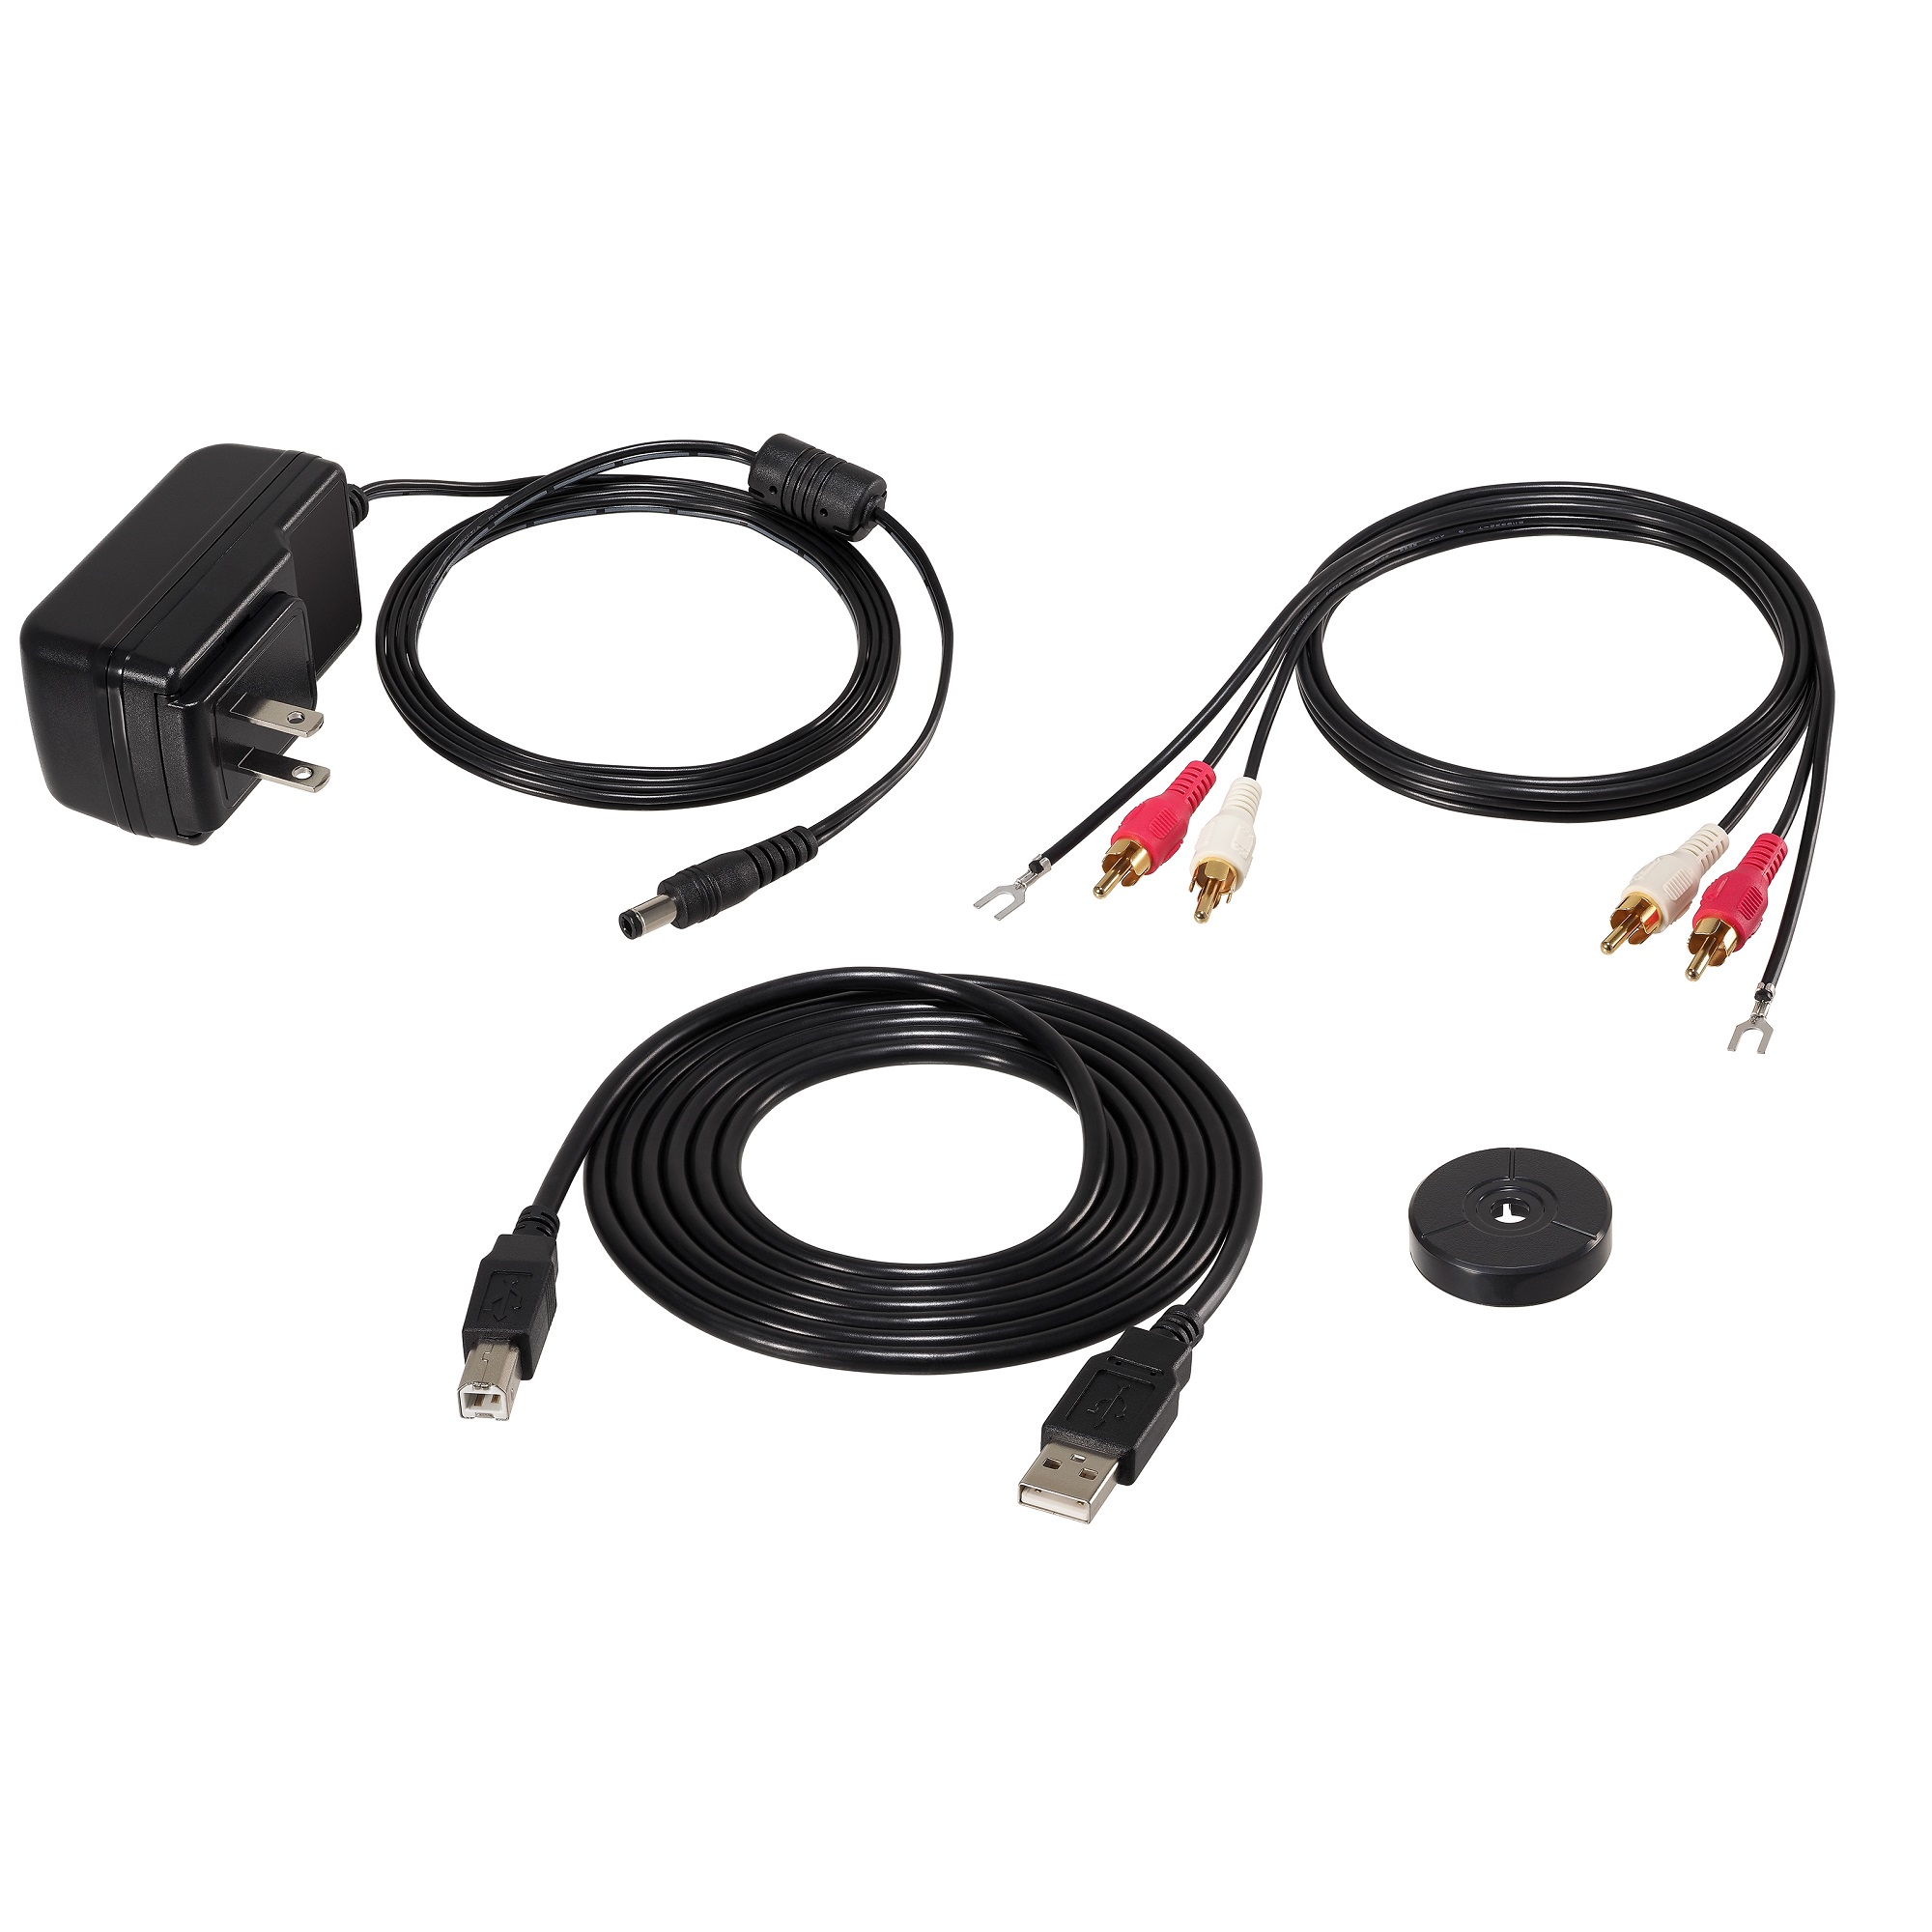  Audio Technica AT-LP120XBT-USB запись плеер официальный магазин ограничение проигрыватель Bluetooth беспроводной USB подключение 